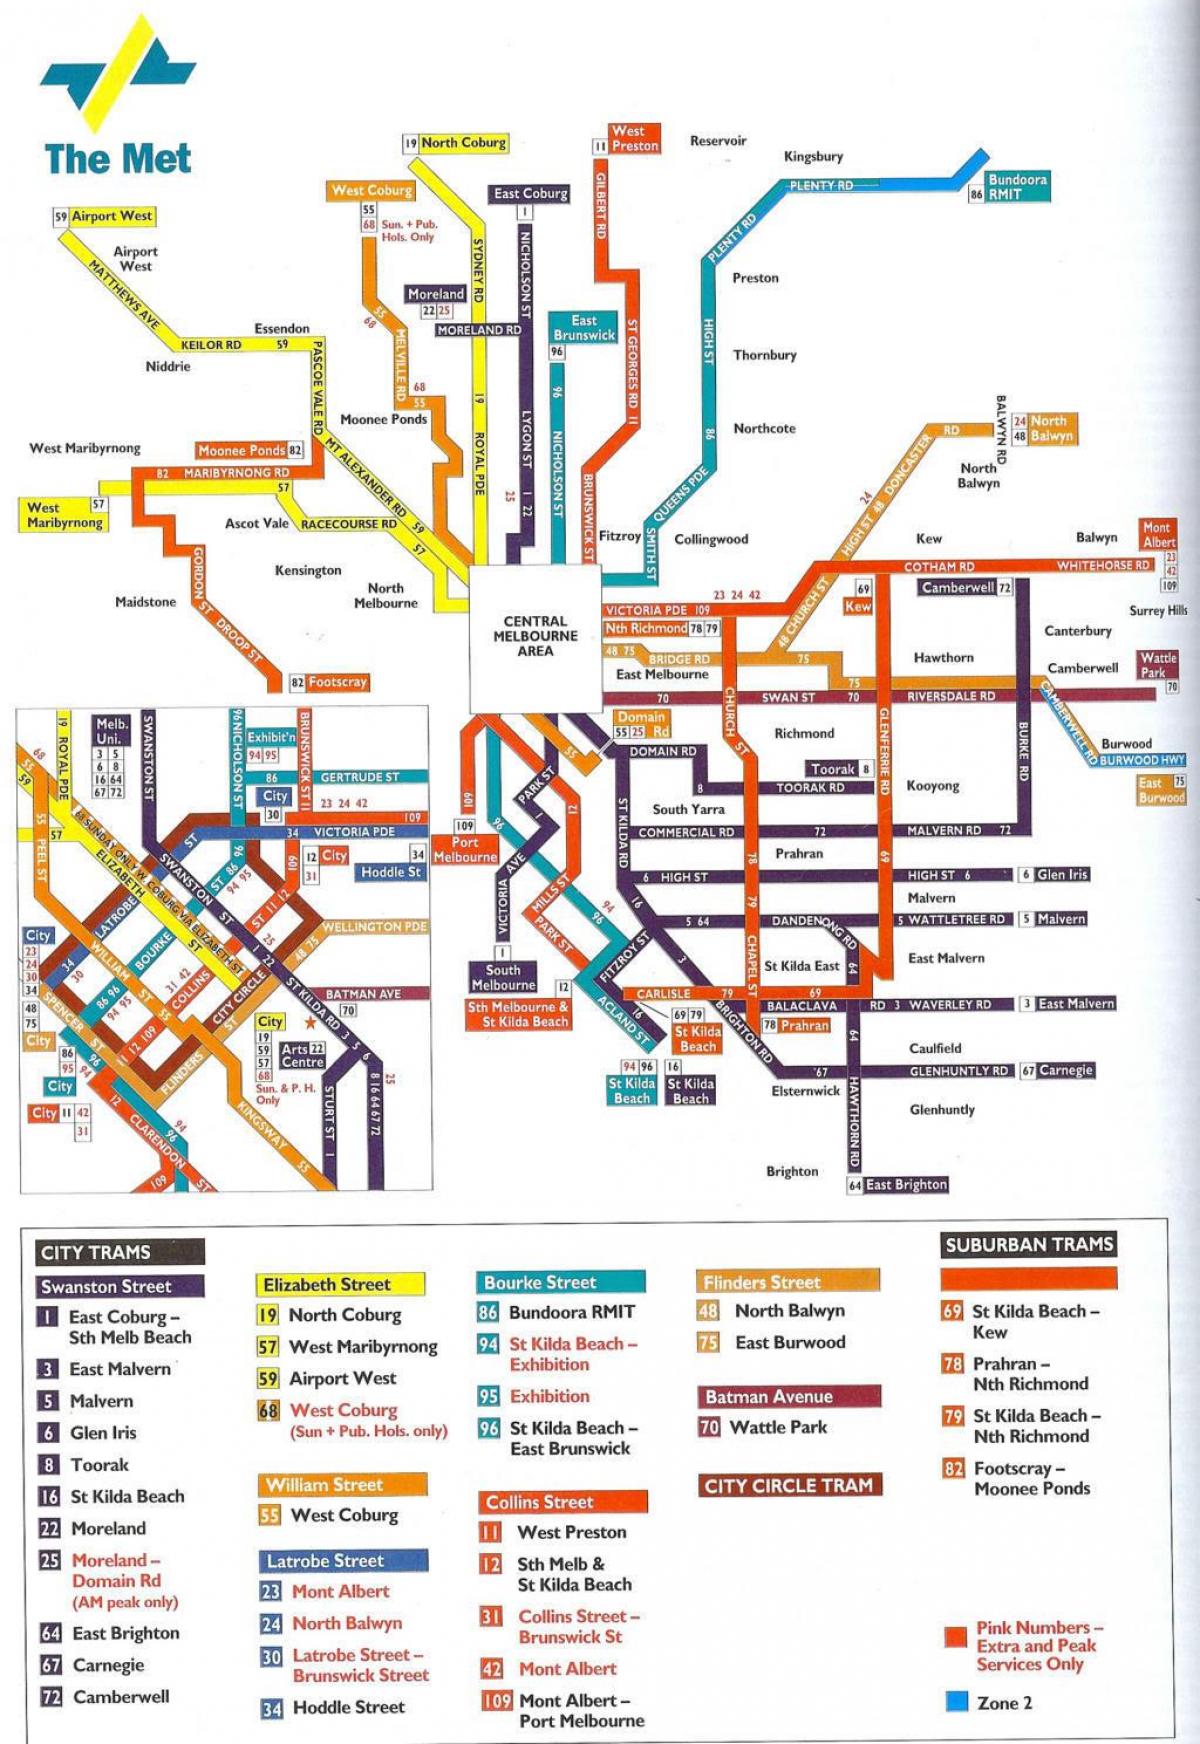 Melbourne garraio publikoaren mapa